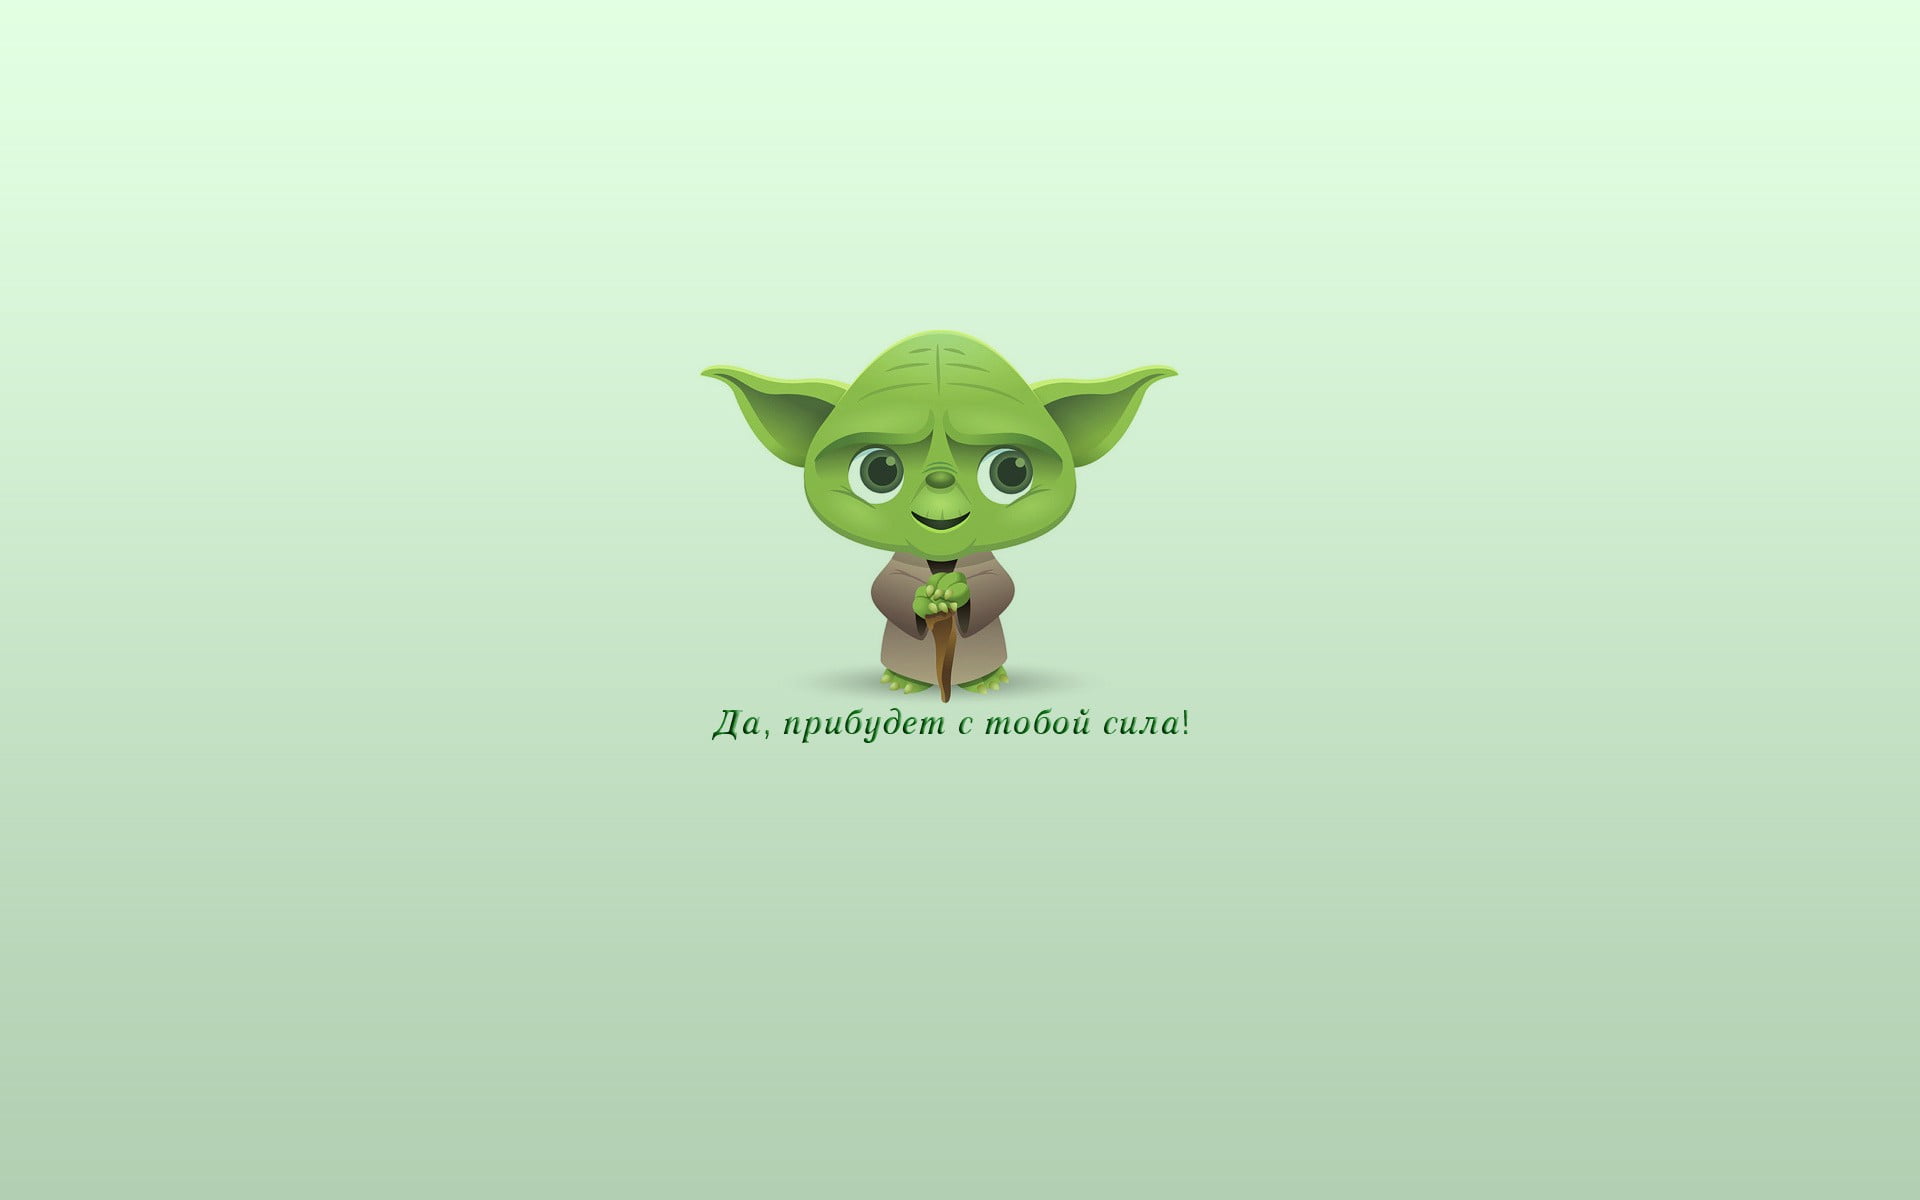 Star Wars Master Yoda illustration, Russian, green color, mammal